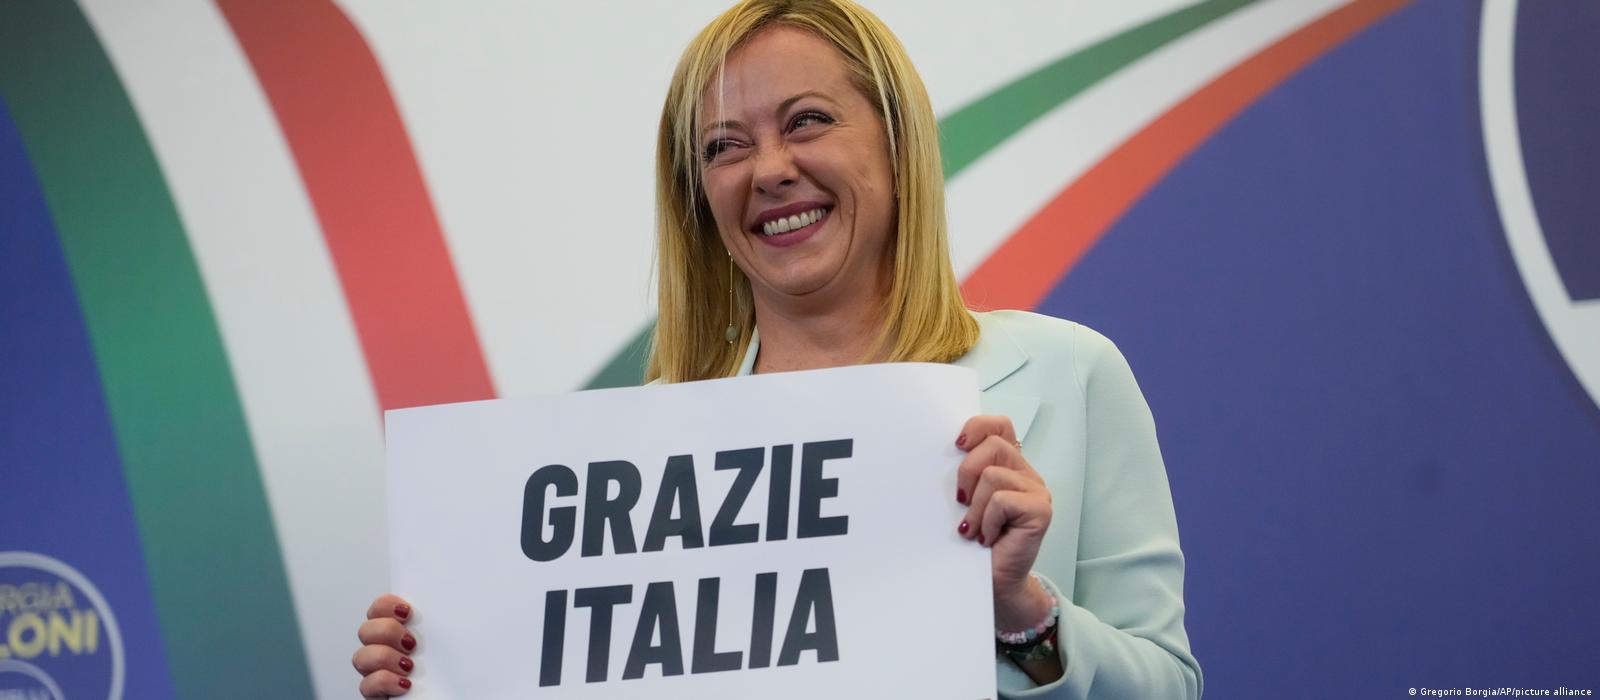 İtalya'da seçimi aşırı sağ ittifak kazandı